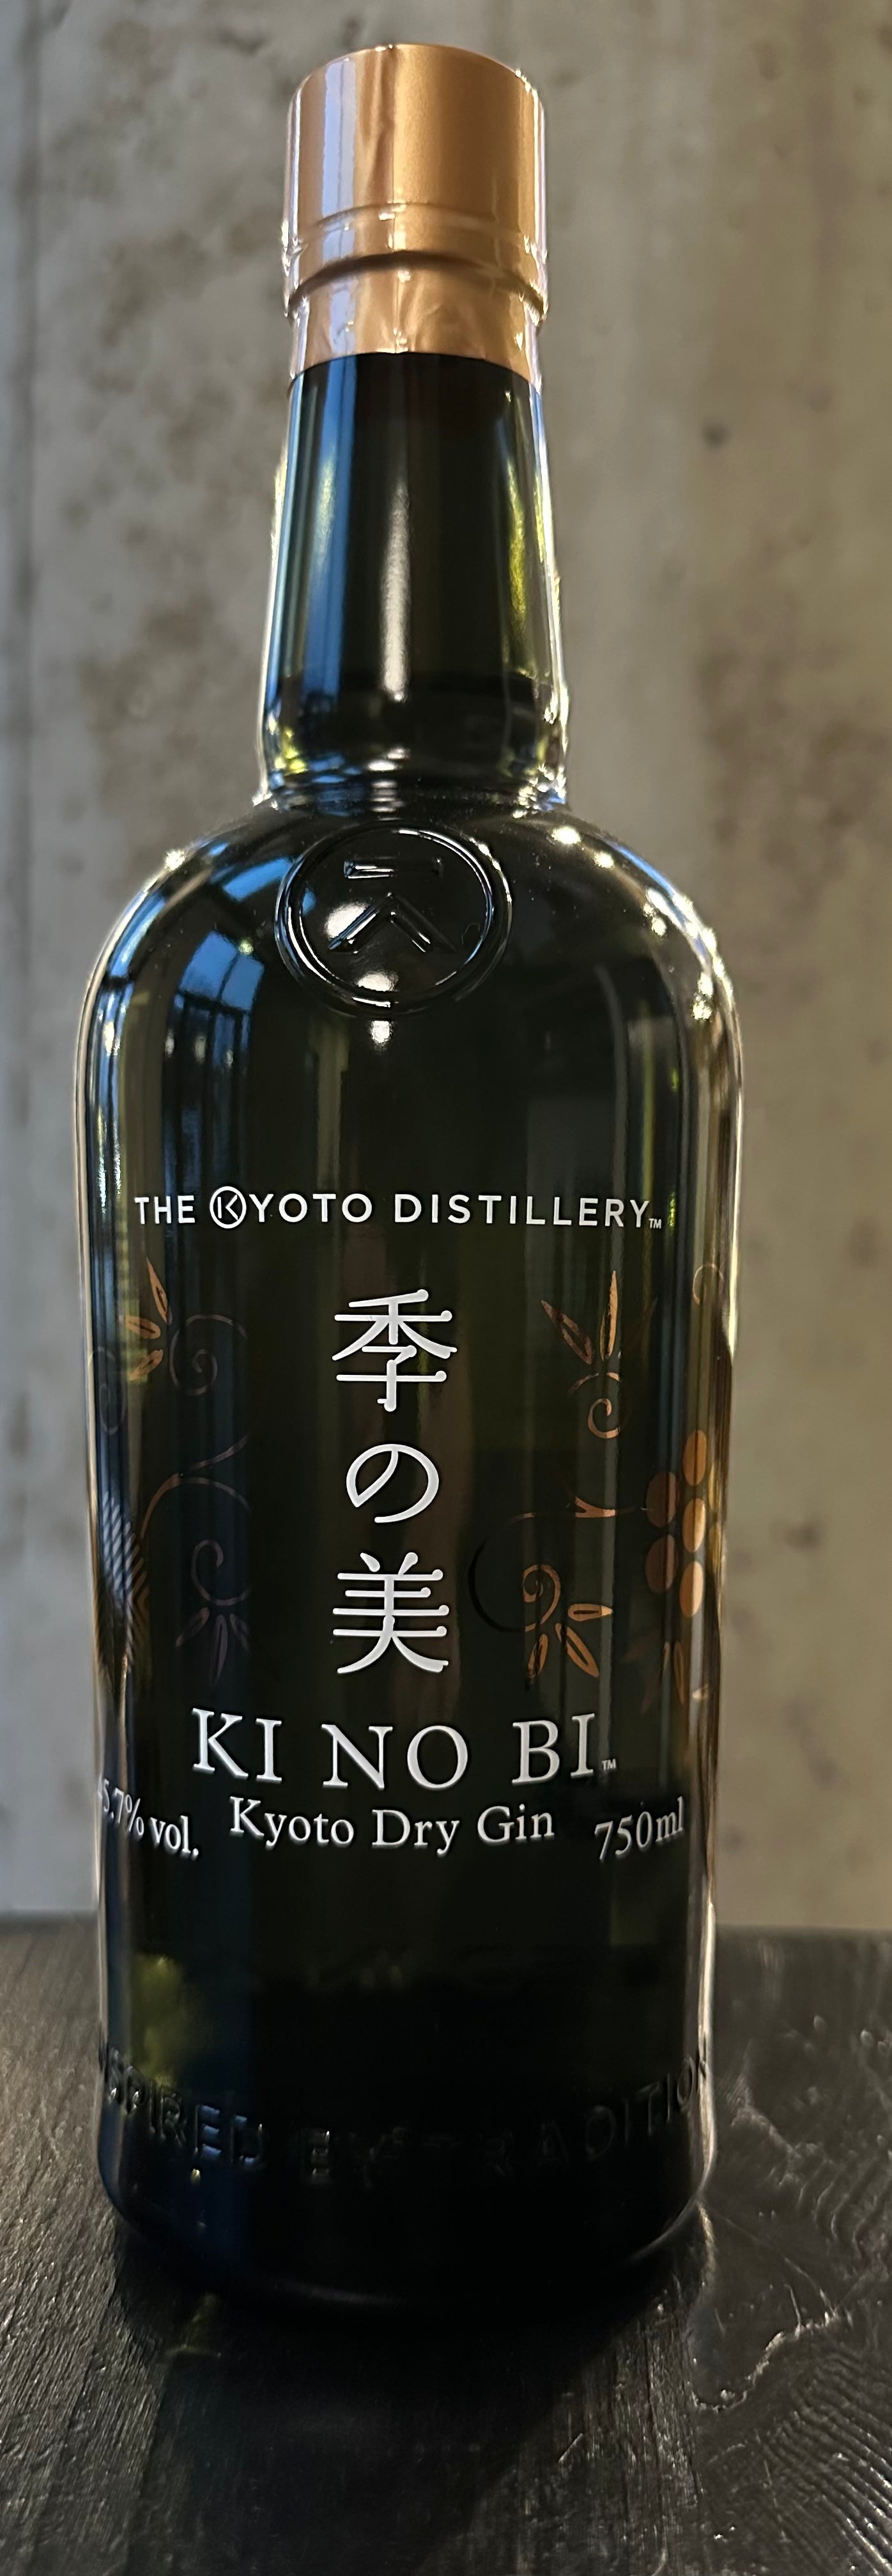 The Kyoto Distillery "KI NO BI" Kyoto Dry Gin